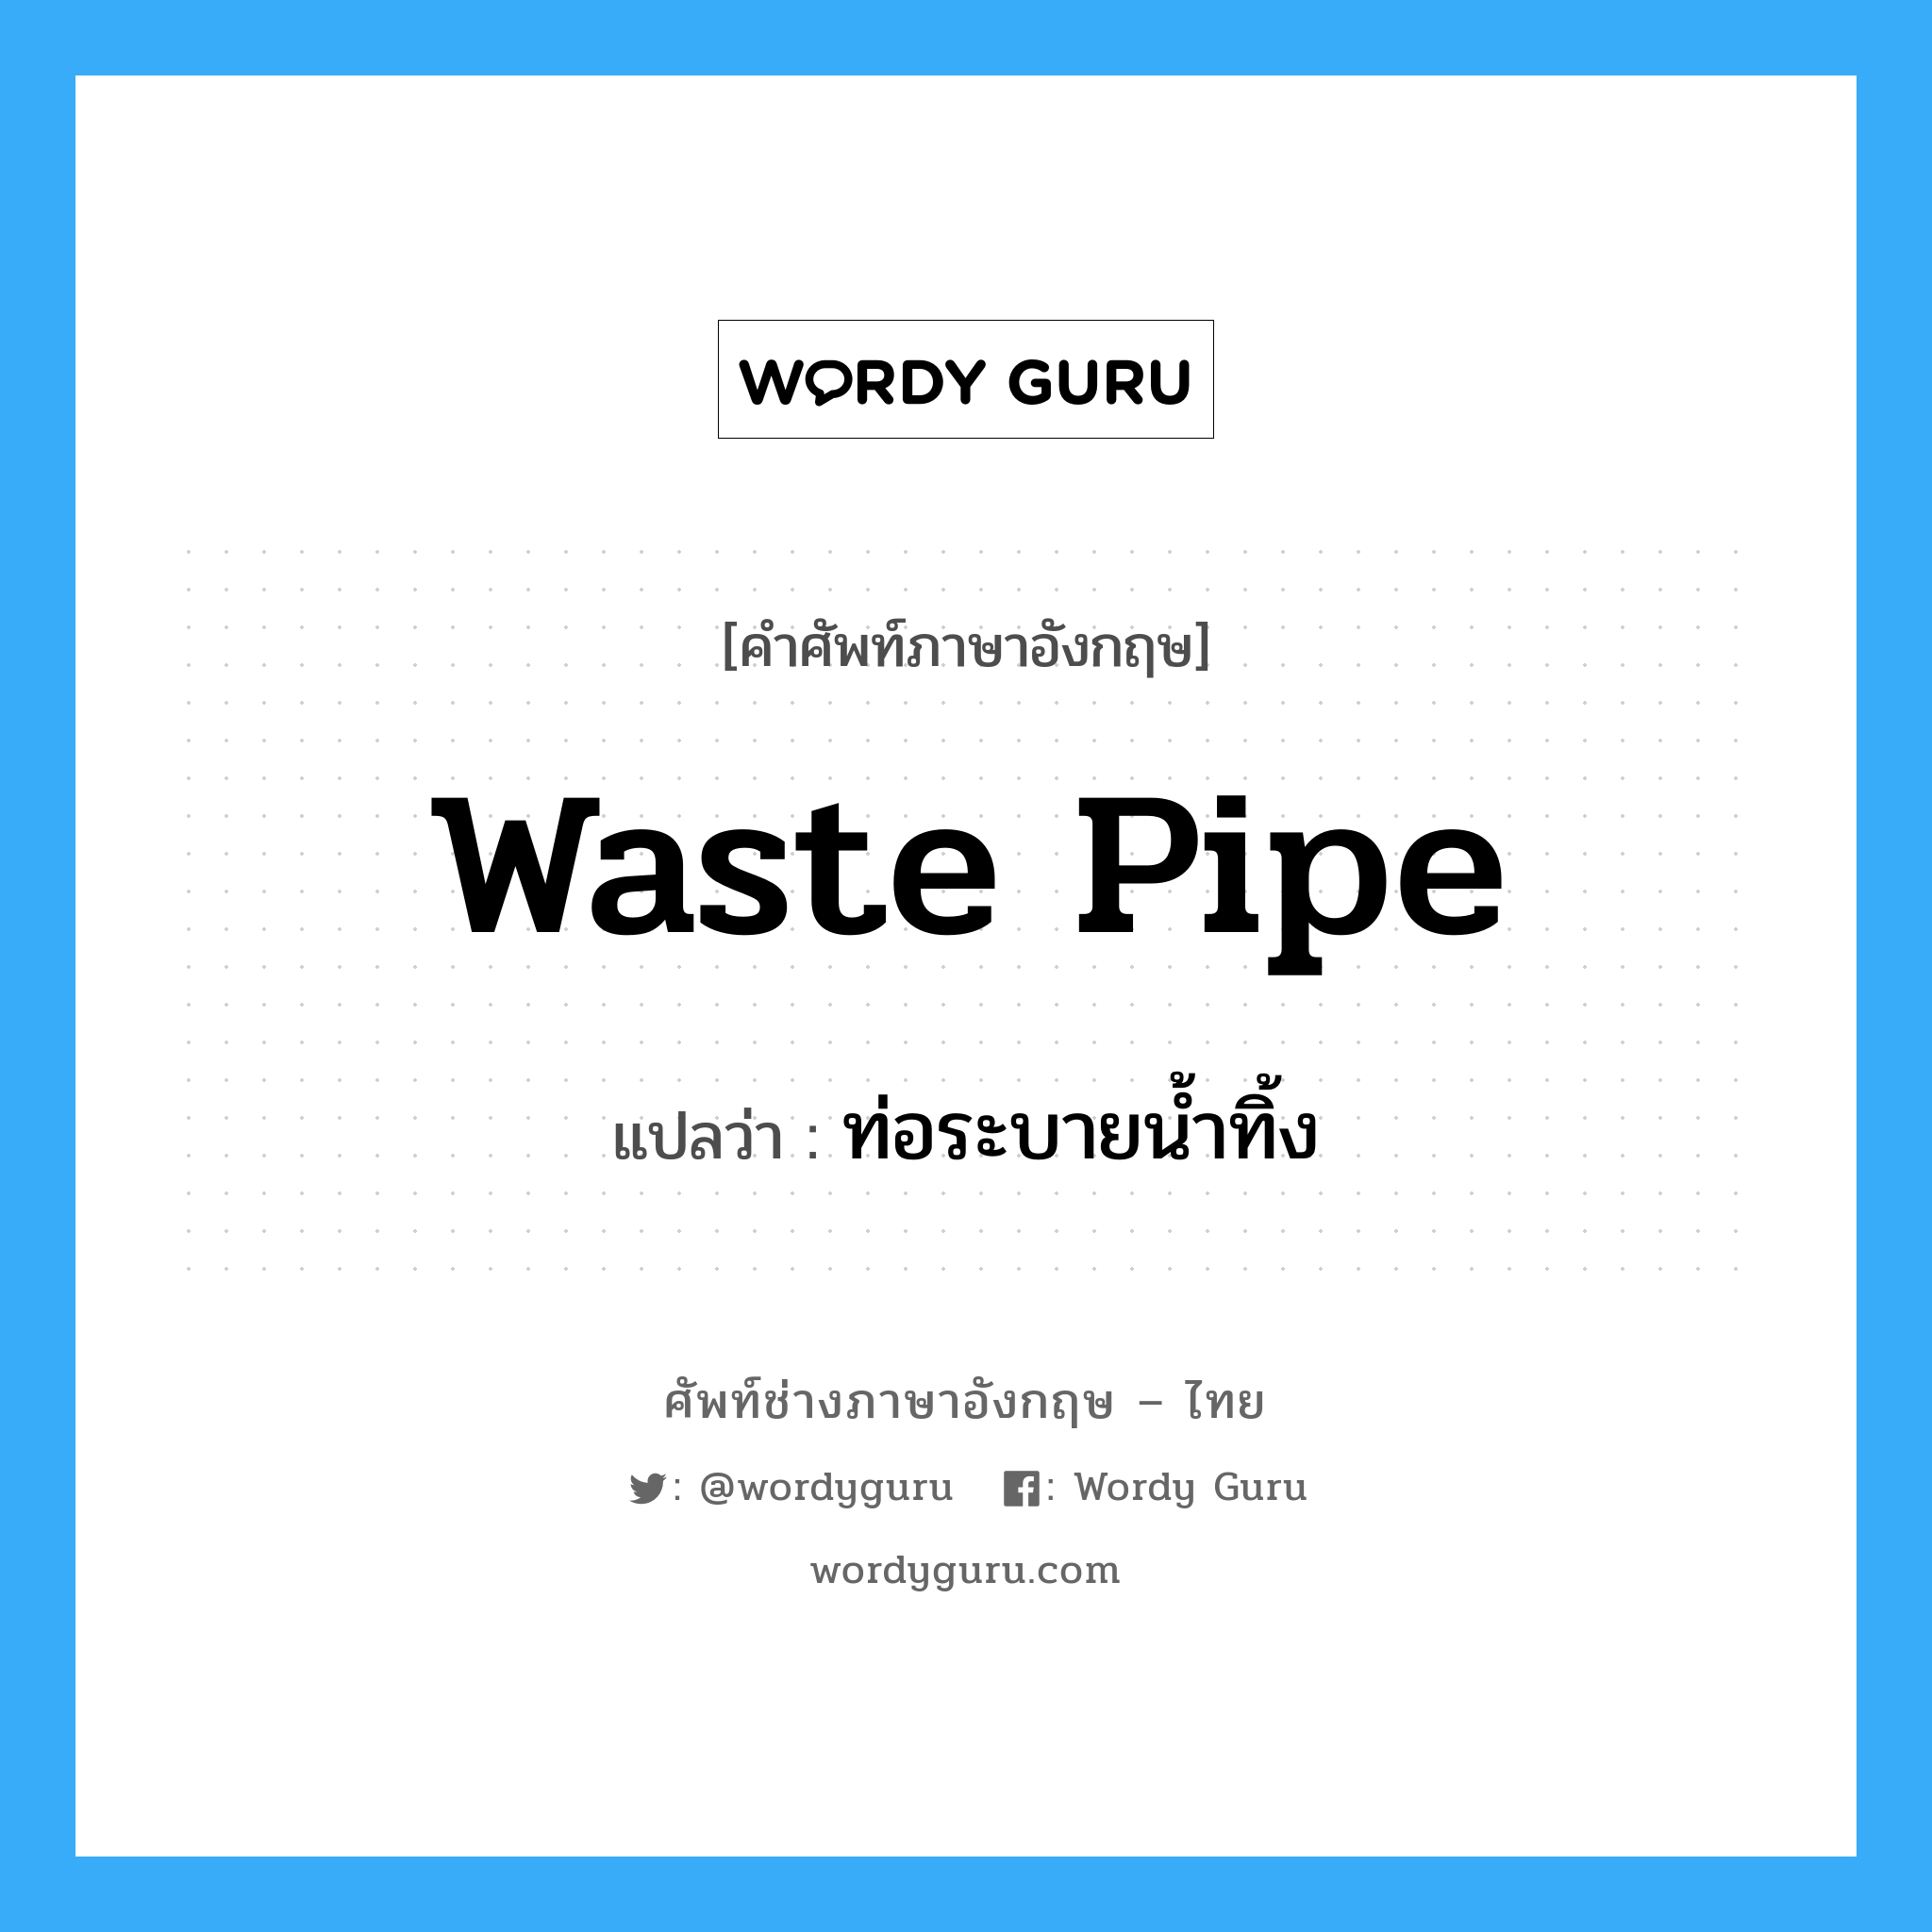 ท่อระบายน้ำทิ้ง ภาษาอังกฤษ?, คำศัพท์ช่างภาษาอังกฤษ - ไทย ท่อระบายน้ำทิ้ง คำศัพท์ภาษาอังกฤษ ท่อระบายน้ำทิ้ง แปลว่า waste pipe